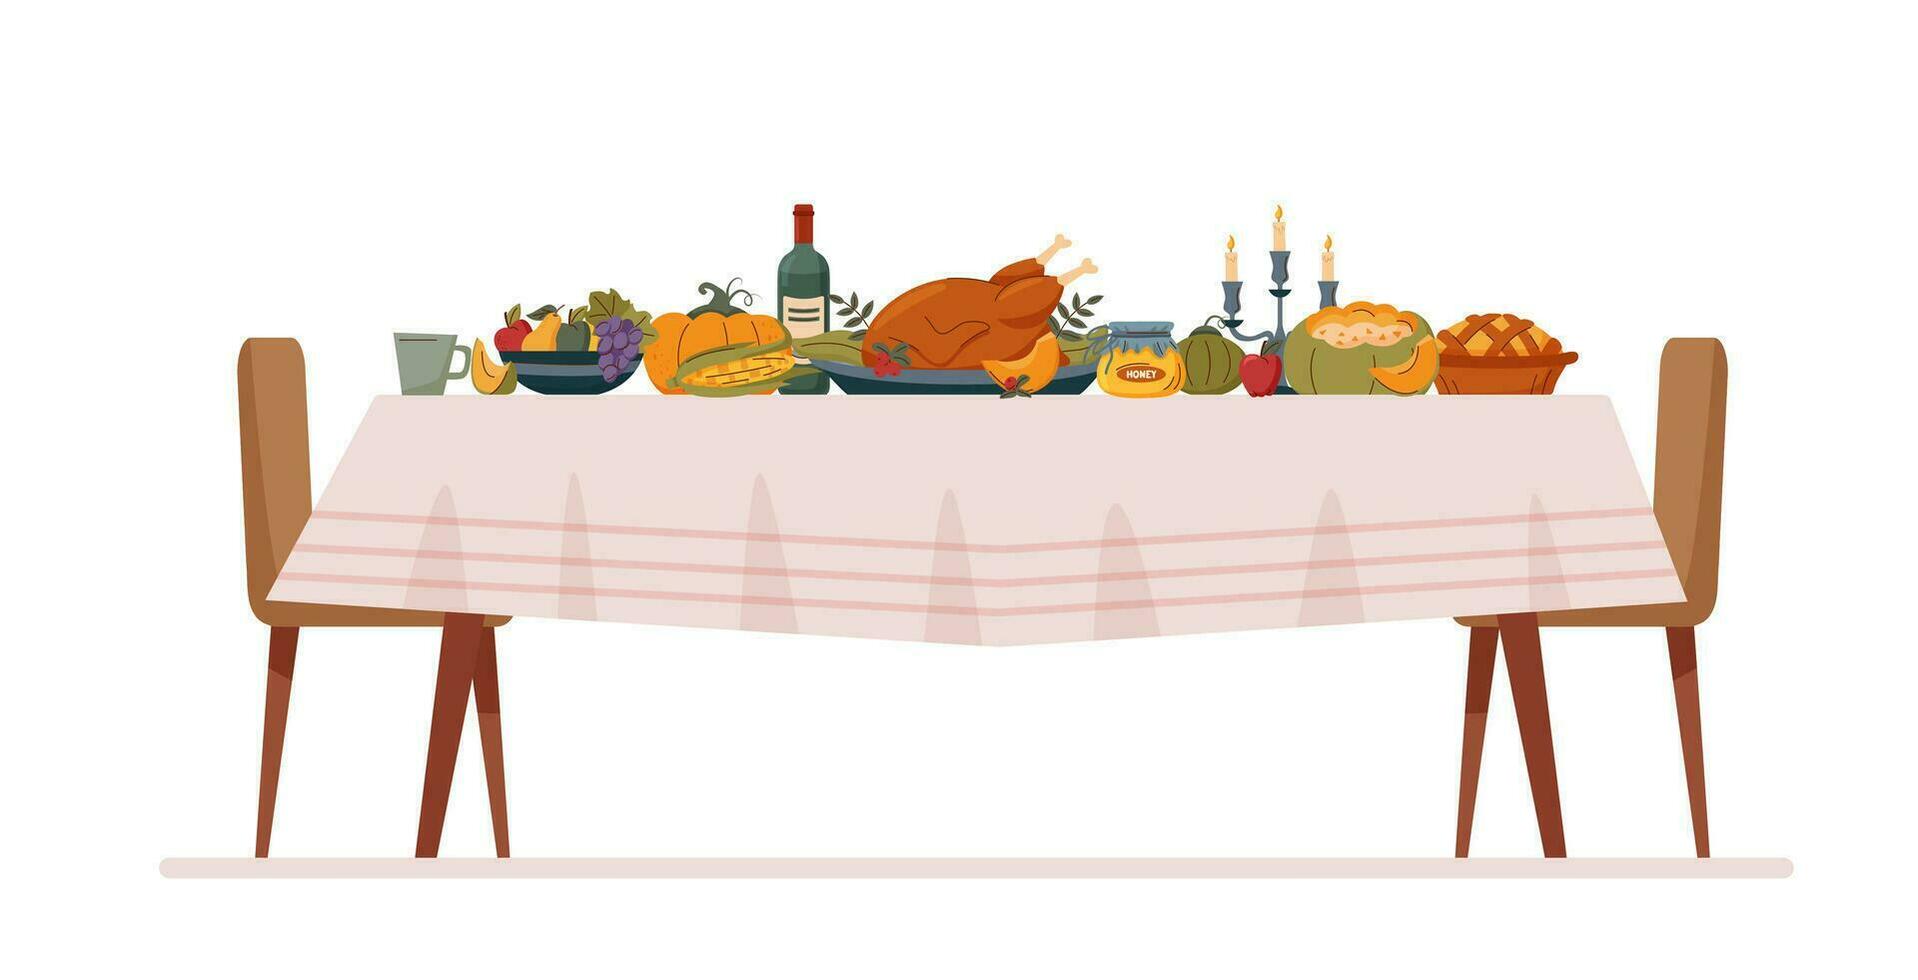 acción de gracias, día festivo, familia, Navidad concepto. comida en el mesa en blanco antecedentes. acción de gracias pavo. vector